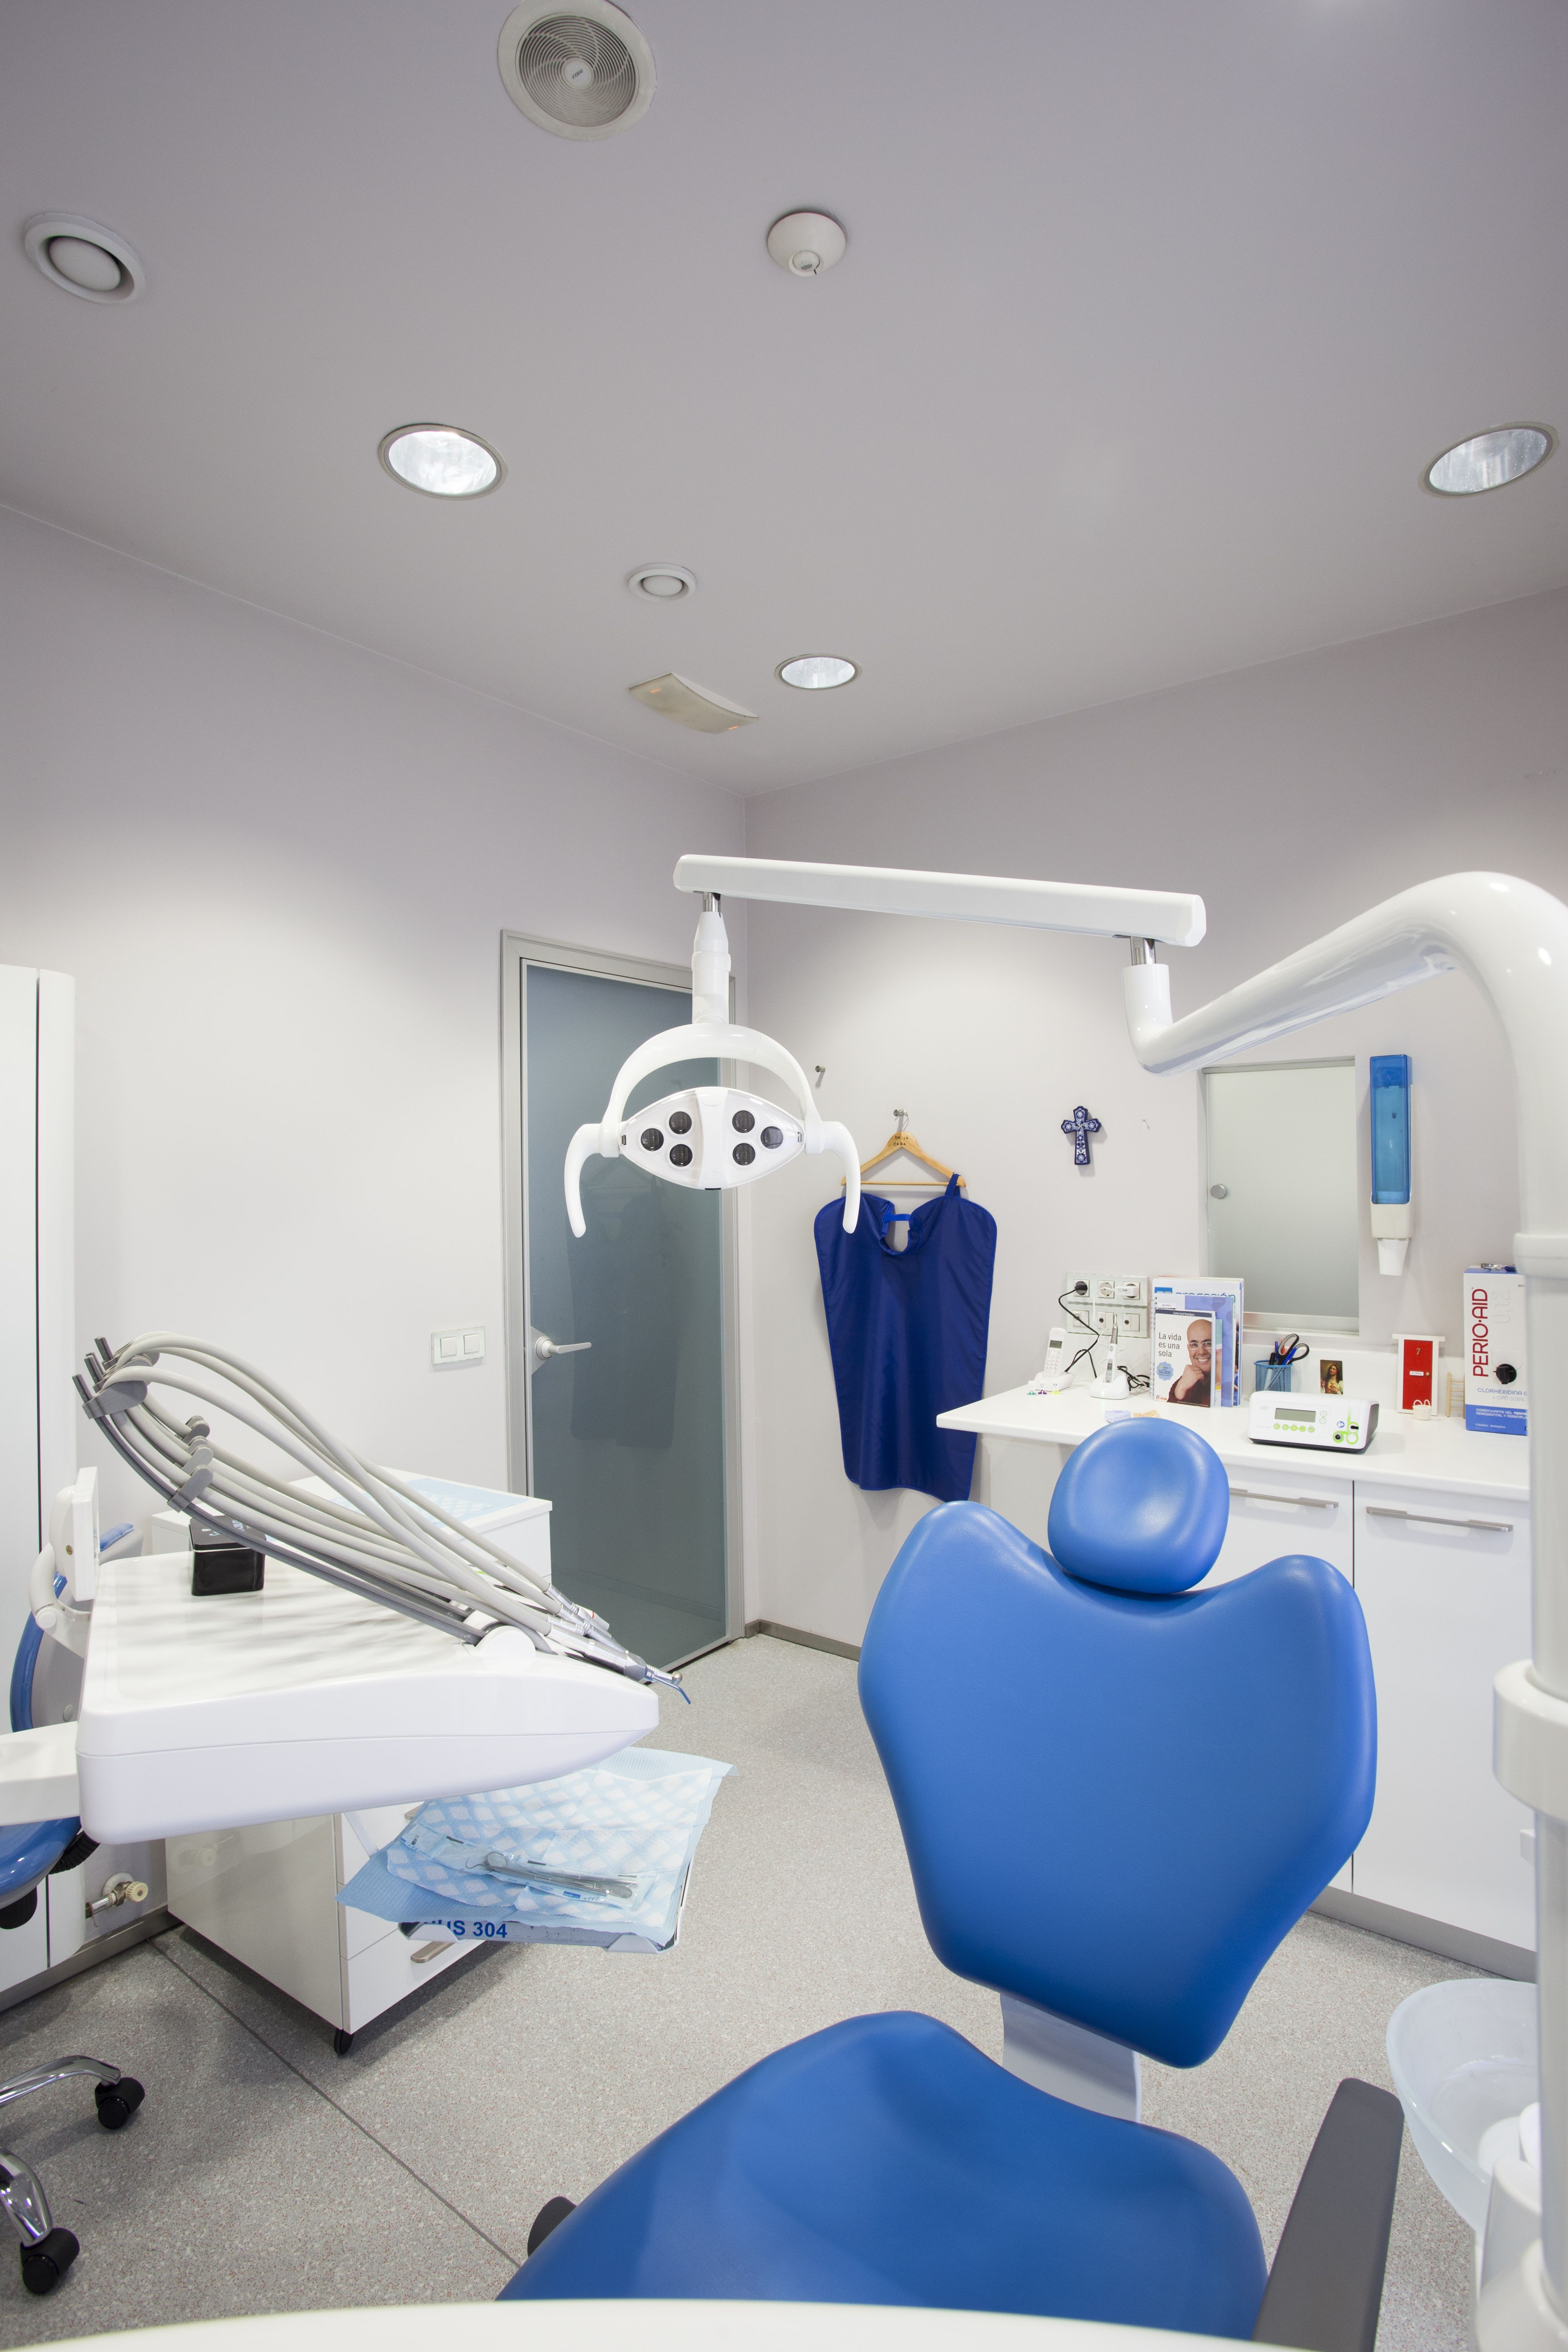 Foto 21 de Expertos en implantes dentales en  | Clínica Dental Venedent